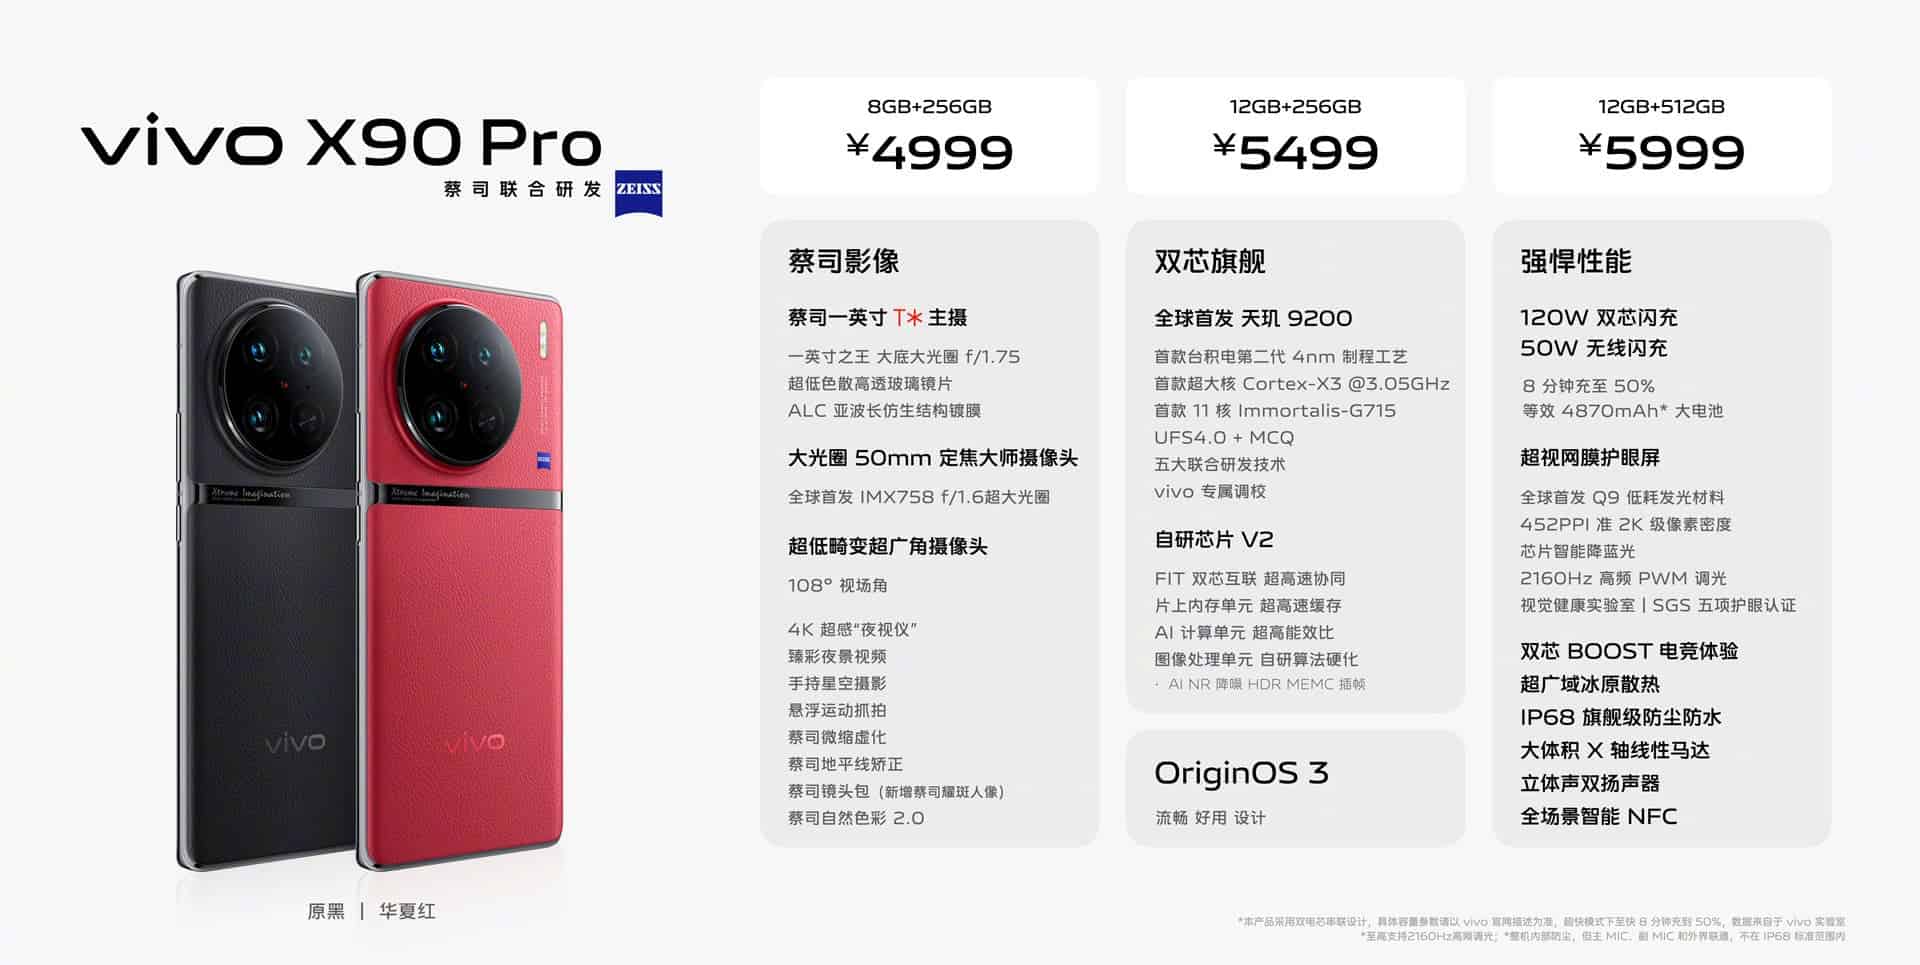 VIVO X90 Pro prices